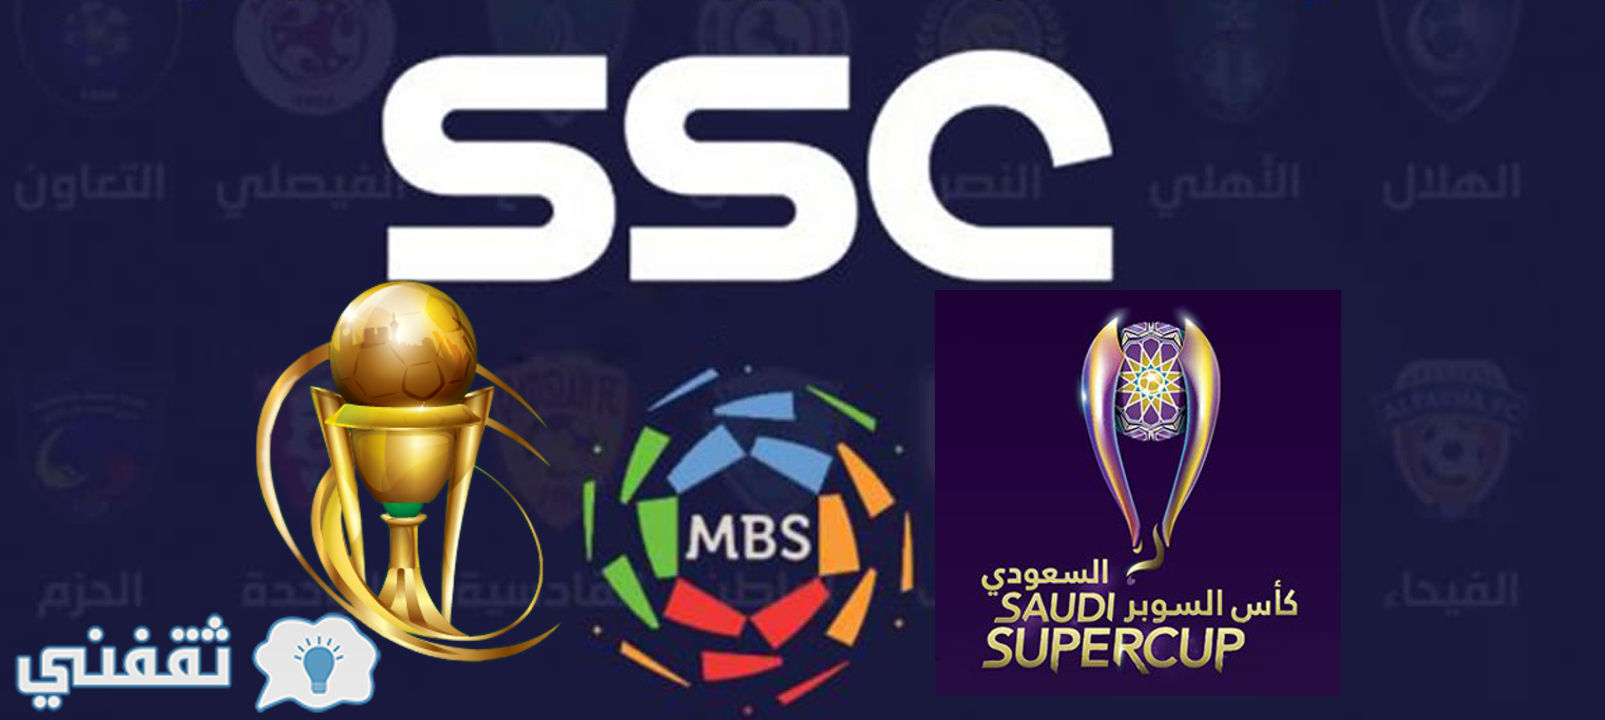 الإعلان عن حصول SSC على حقوق بث المسابقات السعودية